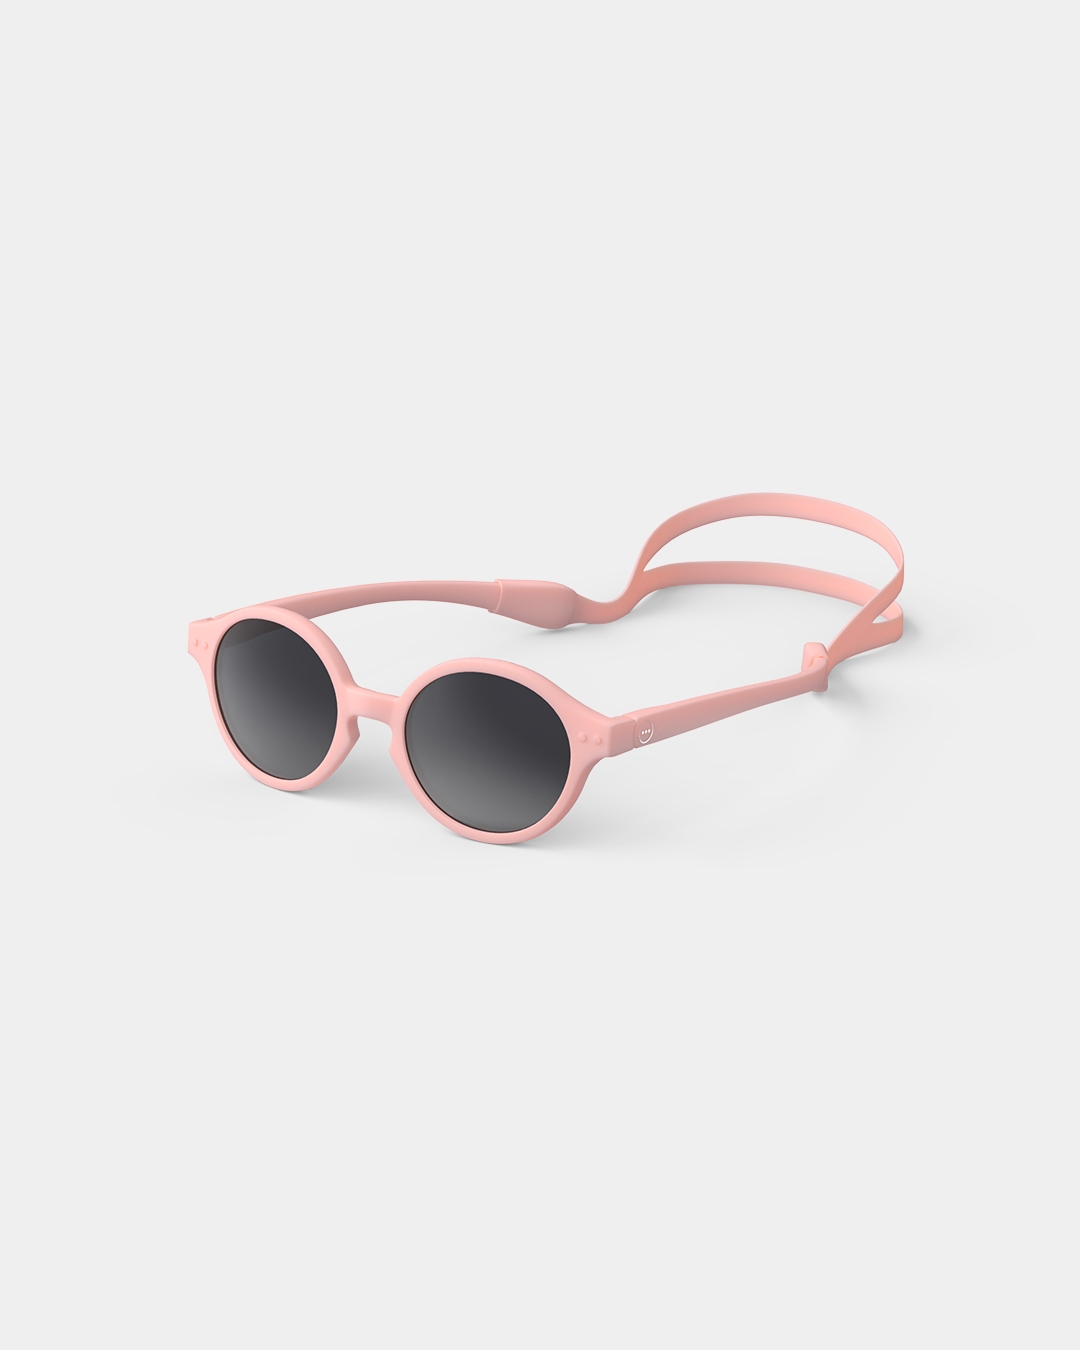 Brille #d Pastel Pink Pantos Schwarz - Izipizi